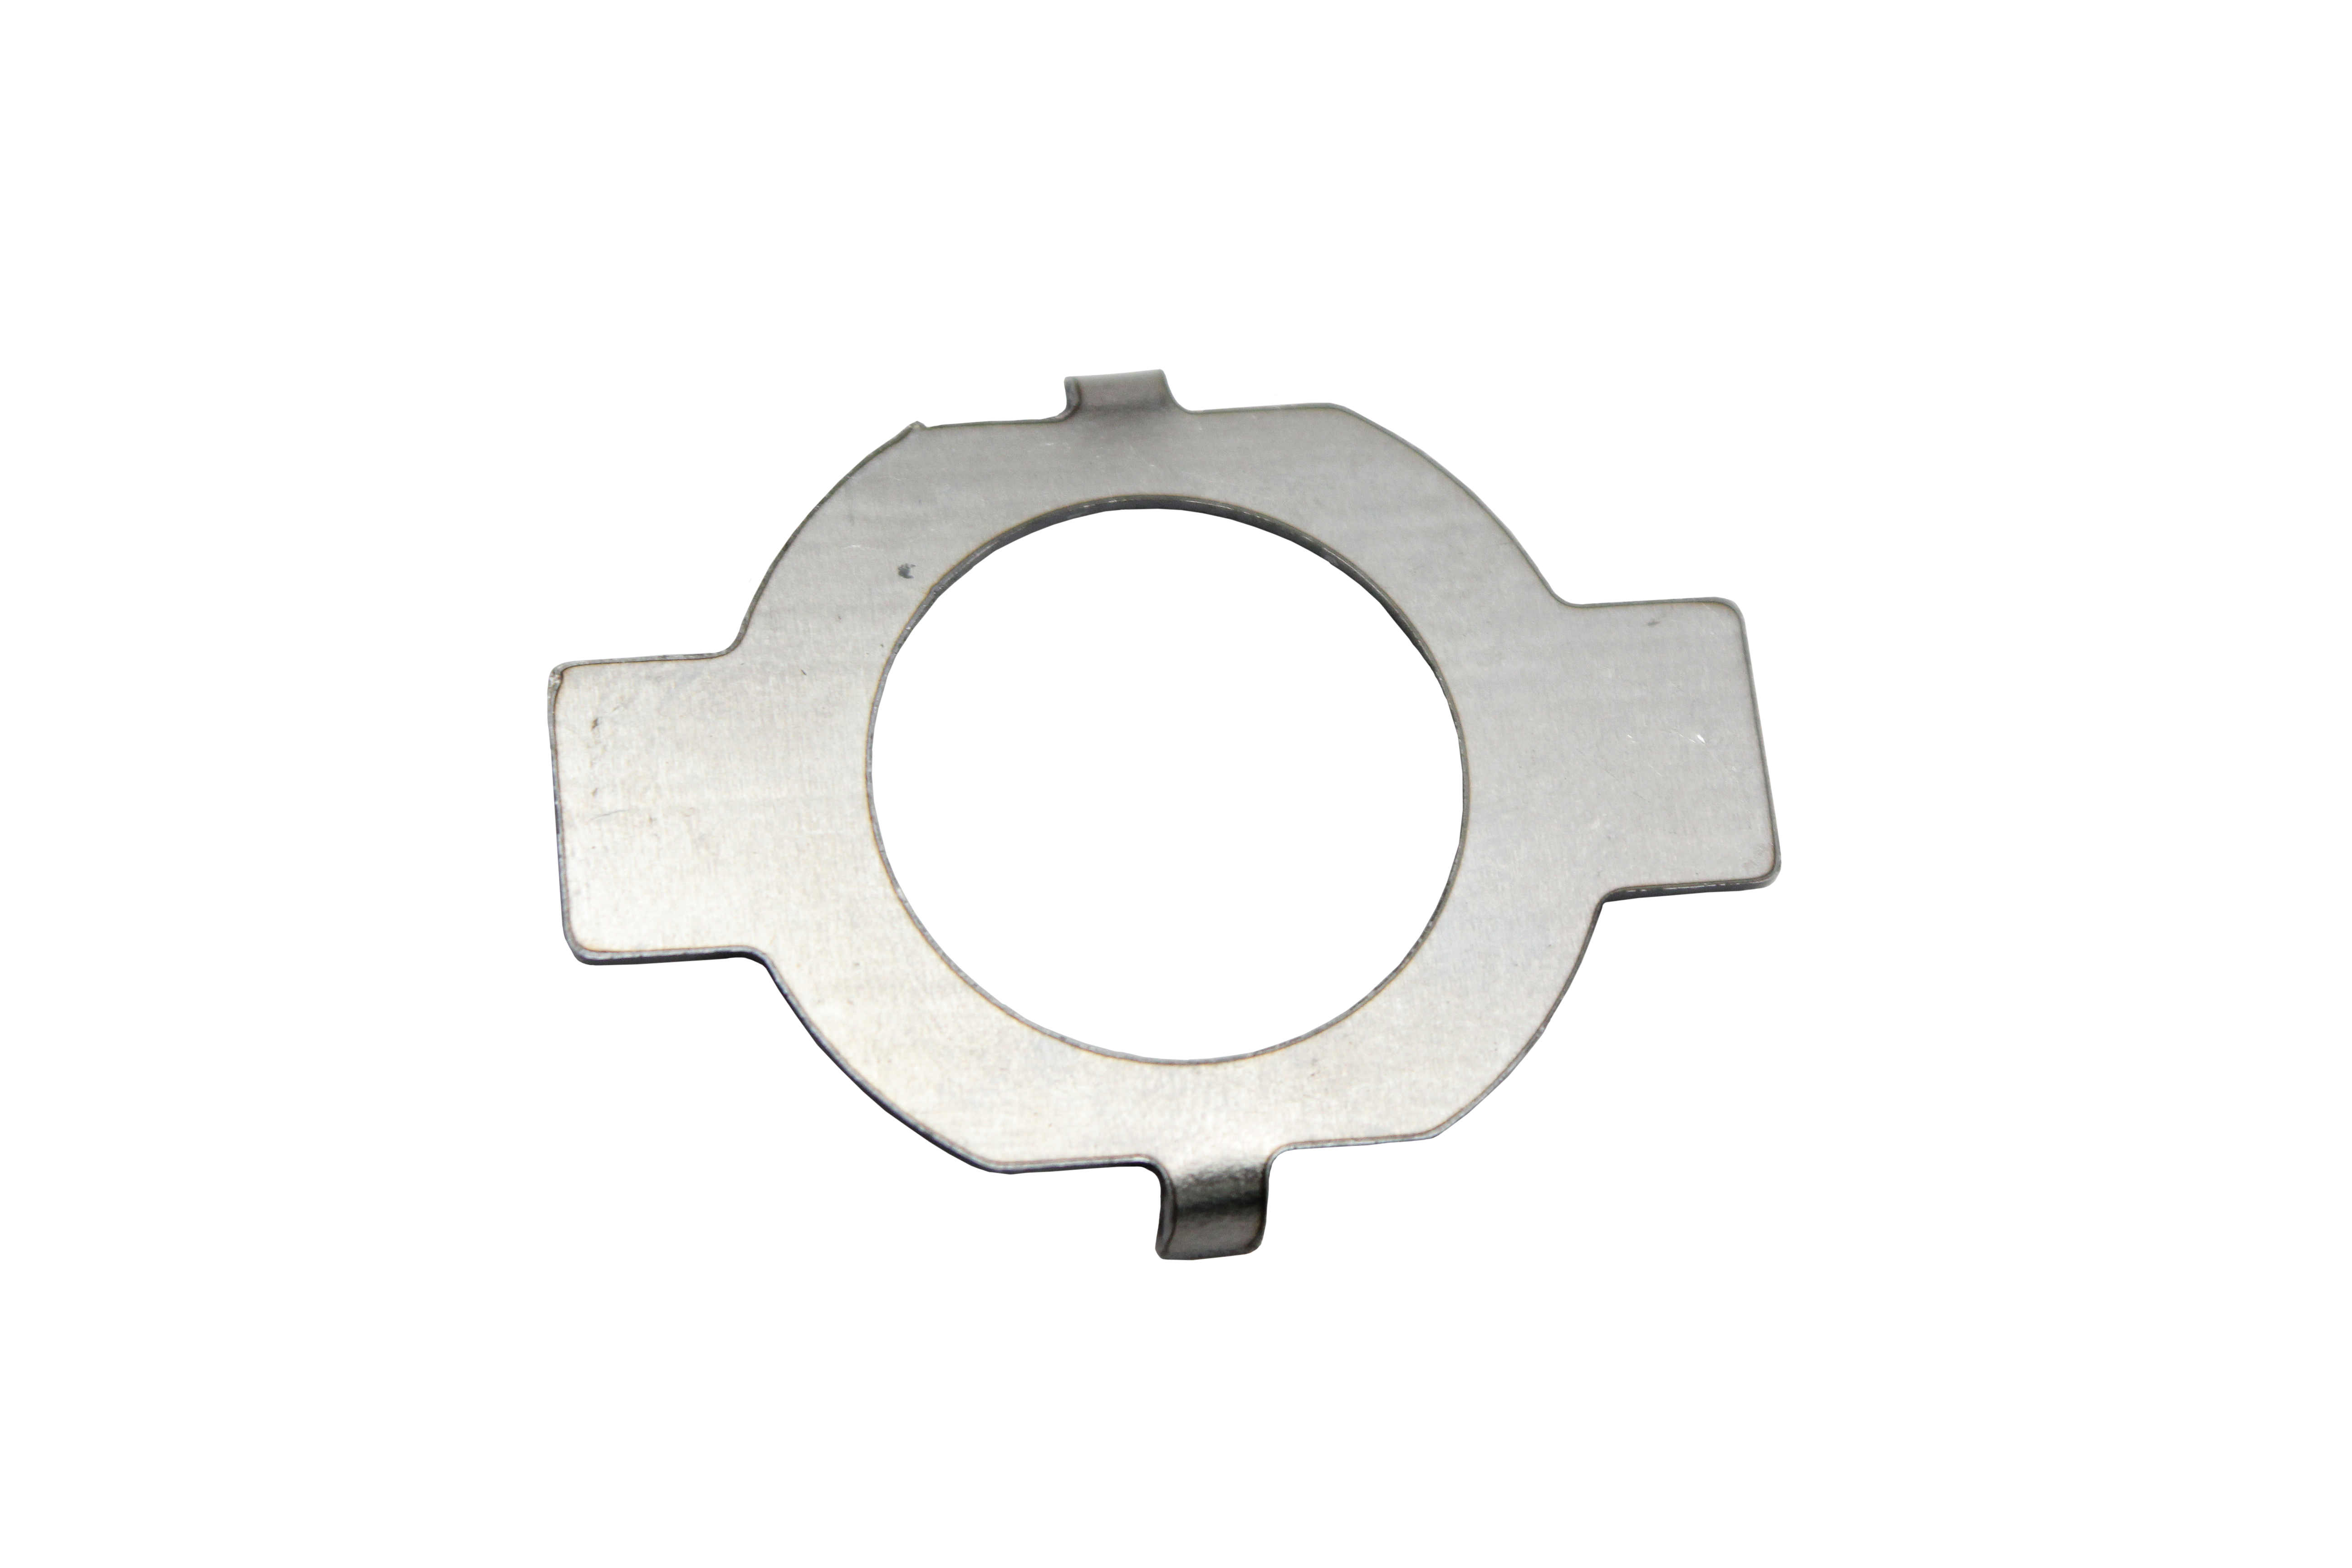 Rekluse Torqdrive Pin Clutch Tab Lock Washer 32mm